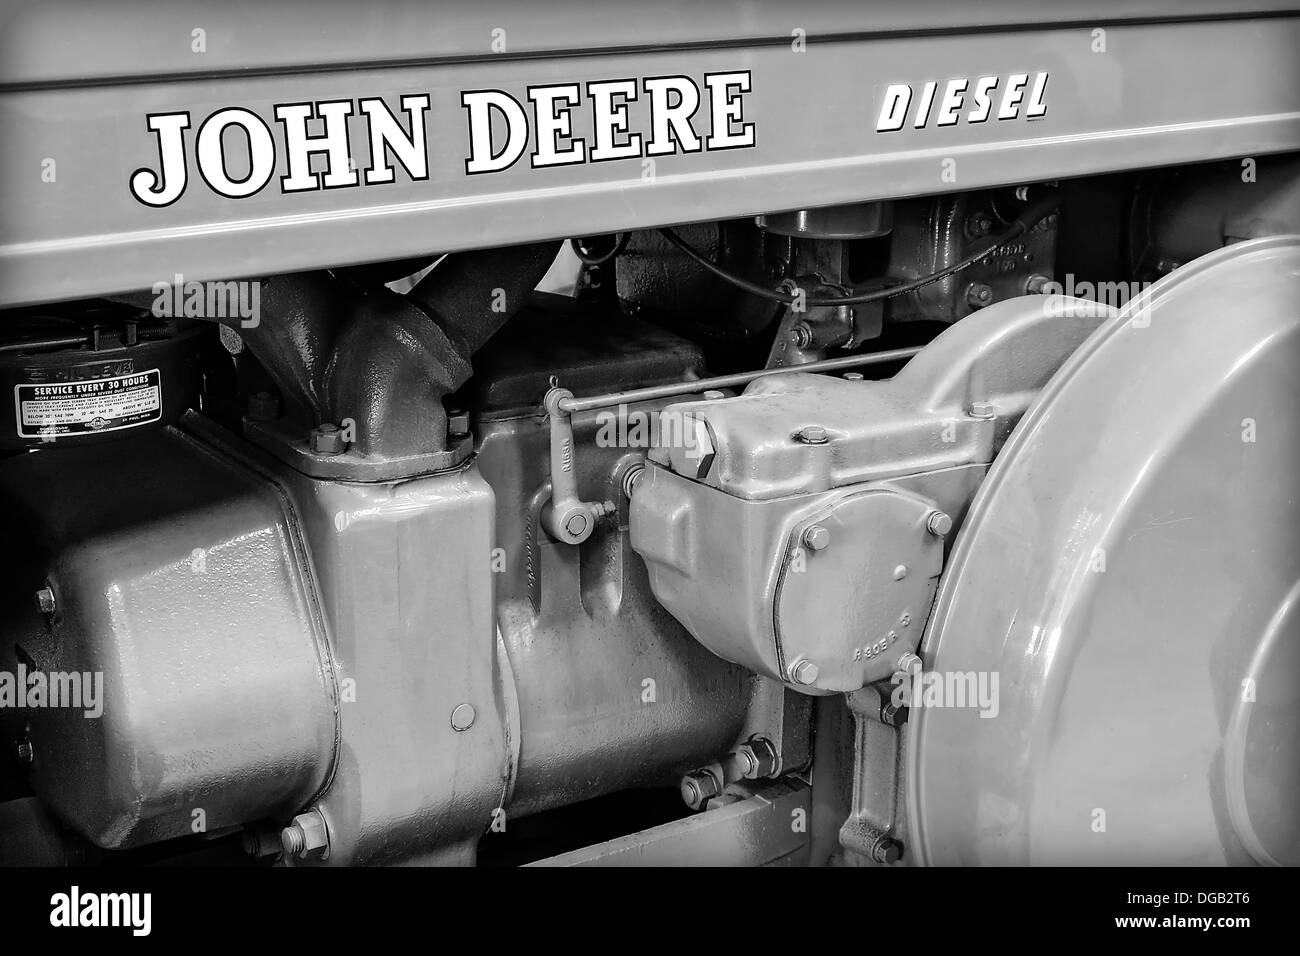 Detailansicht eines John Deere-Traktoren-Motors. Stockfoto